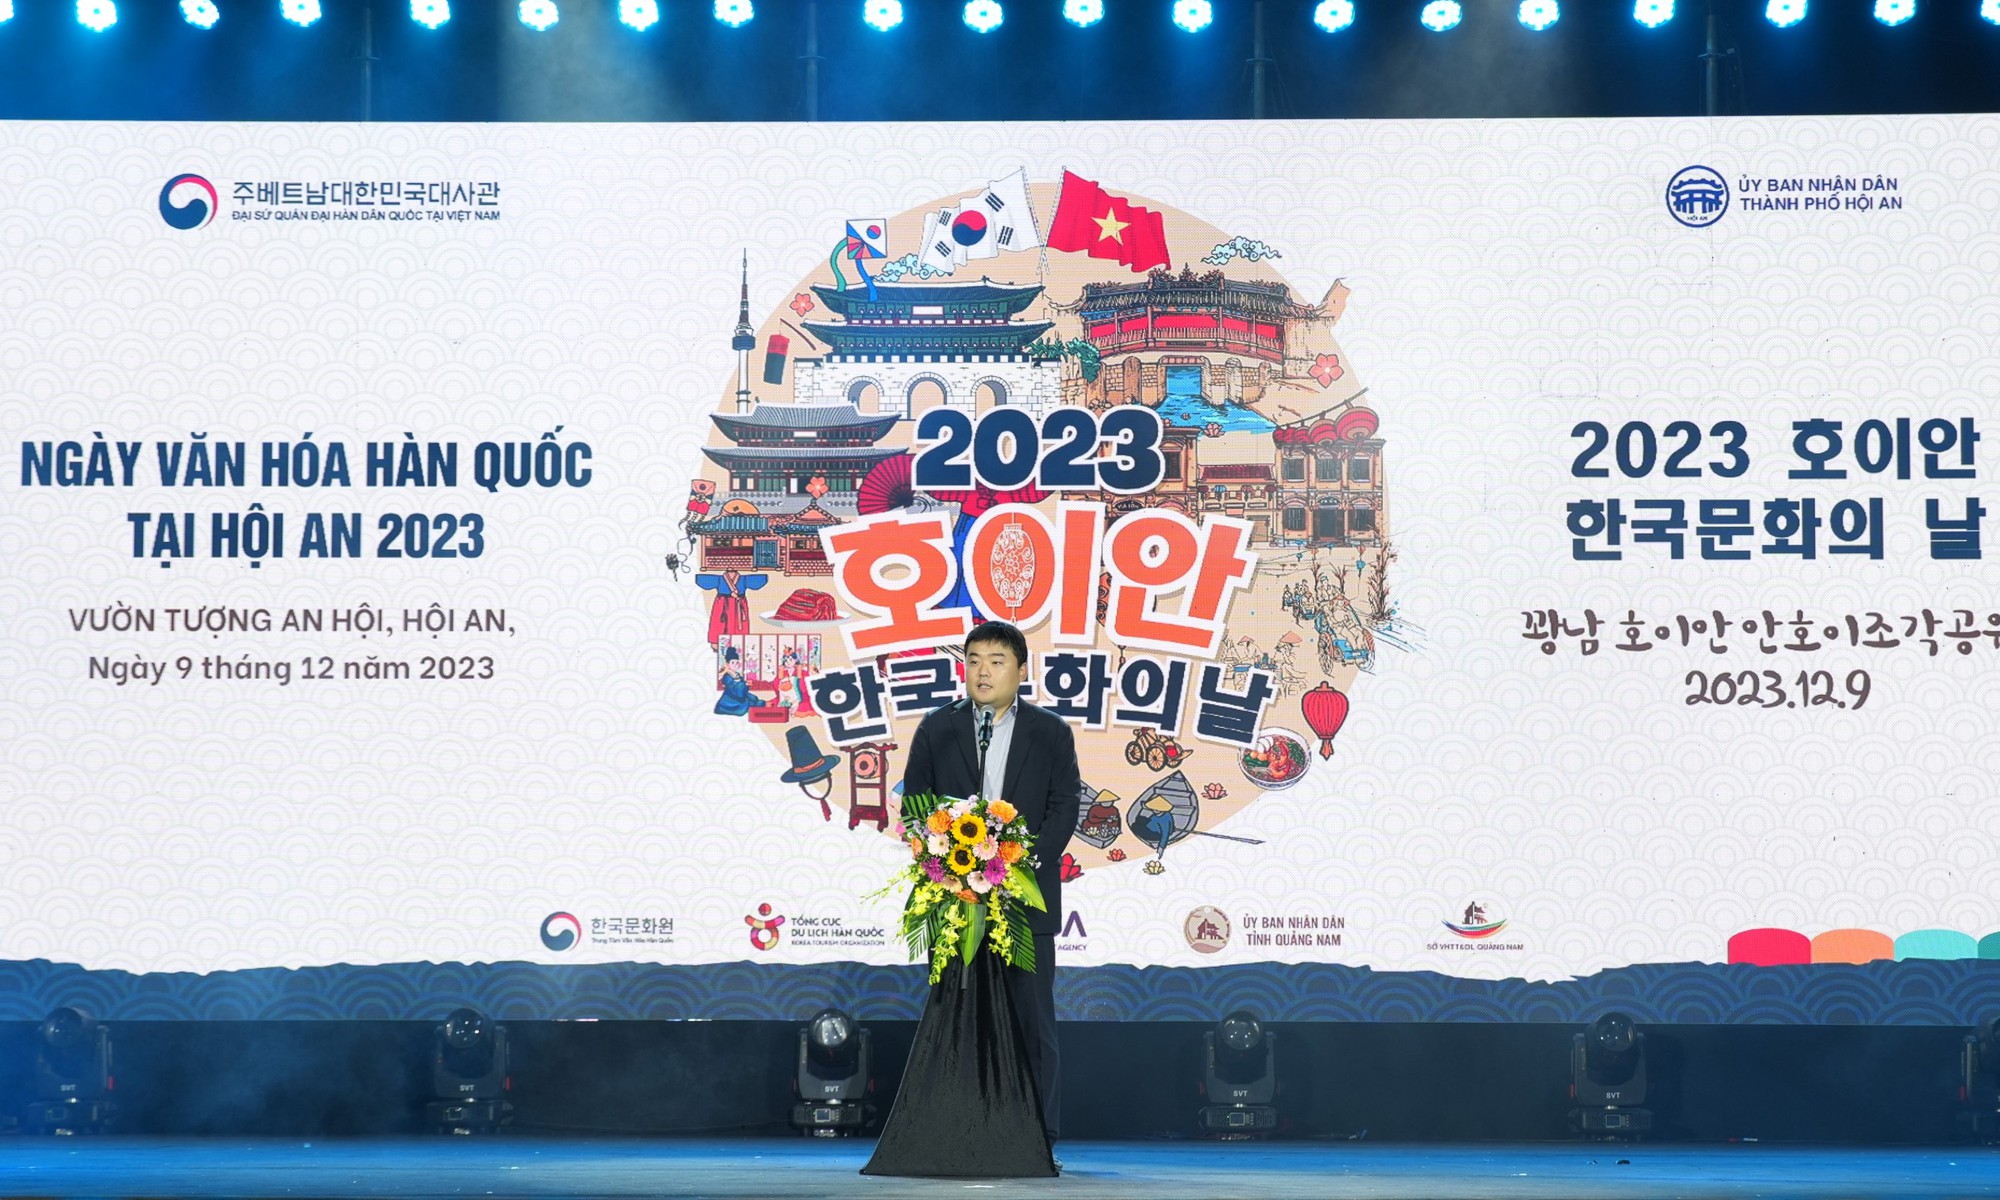 Hình ảnh ấn tượng “Ngày văn hóa Hàn Quốc tại Hội An 2023” - Ảnh 1.